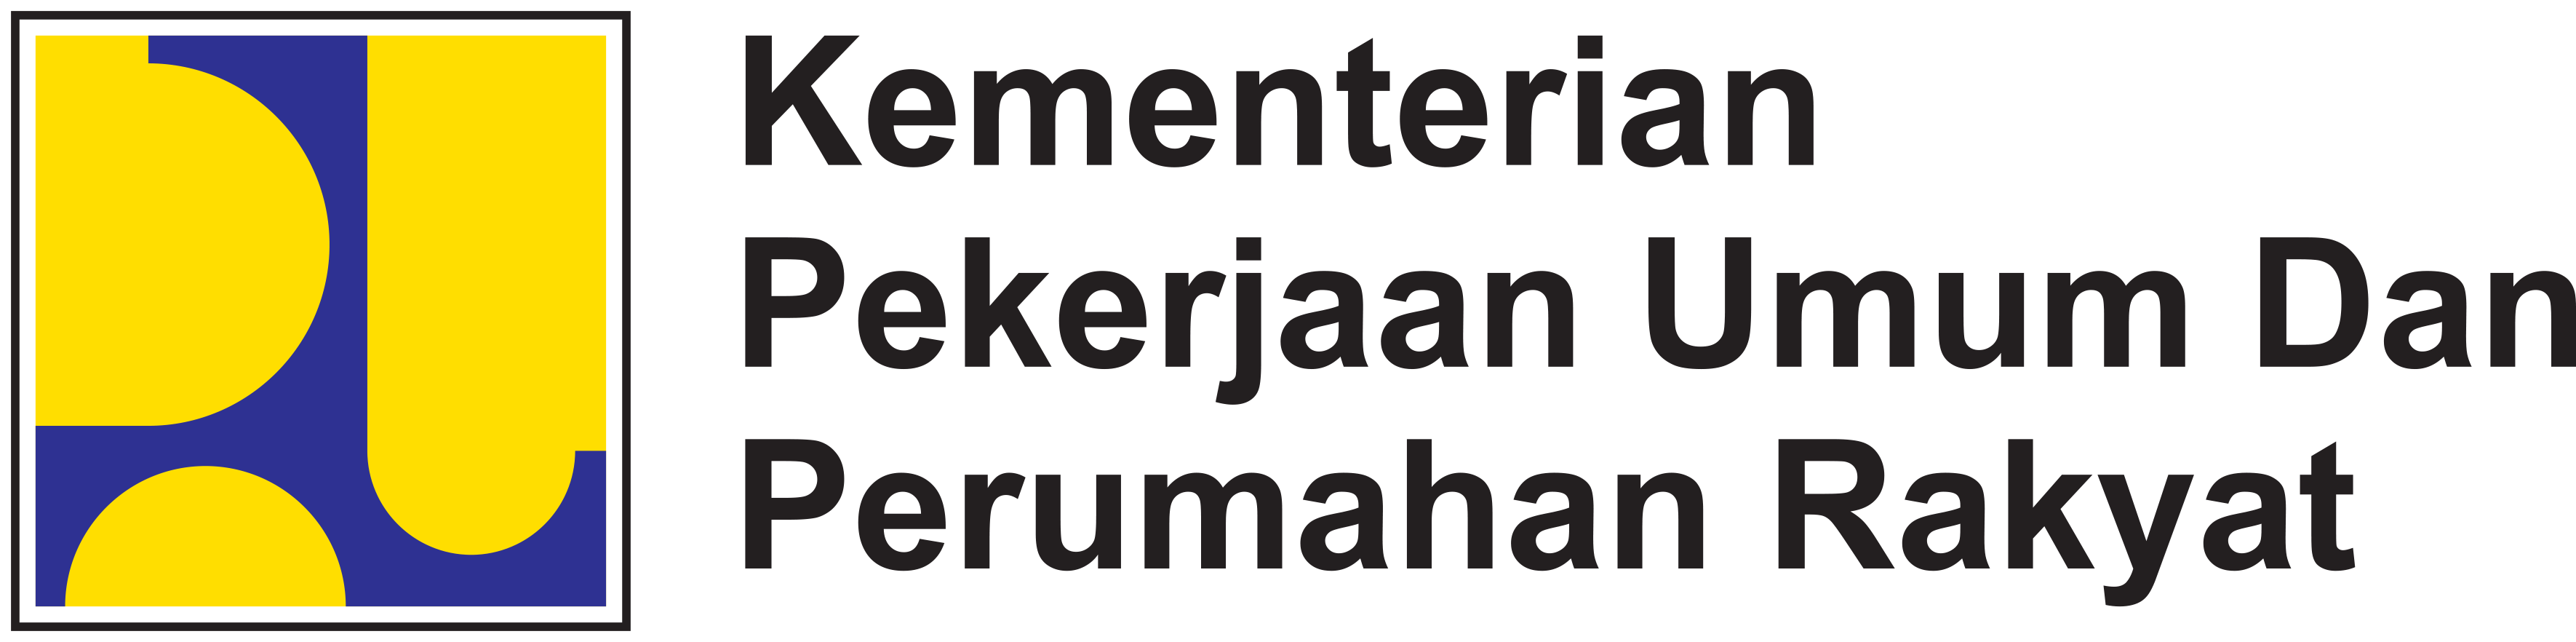 Sa Pu Desain Download Logo Kementerian Pekerjaan Umum dan Perumahan